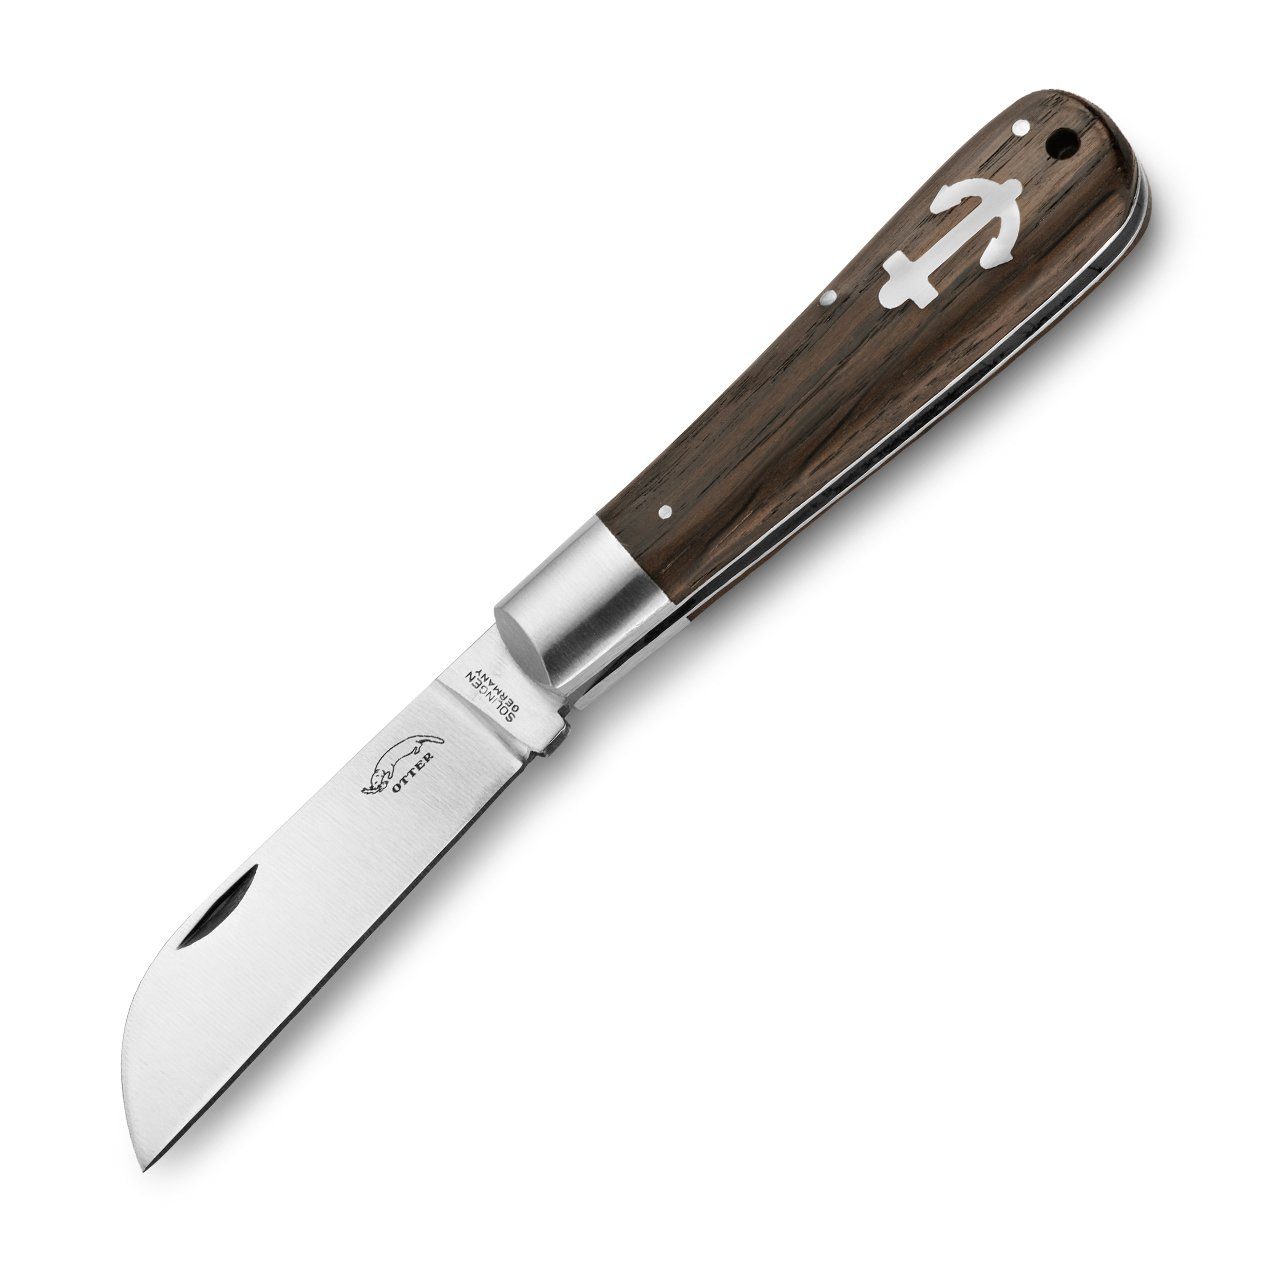 Otter Messer Taschenmesser Ankermesser klein Räuchereiche, Slipjoint Carbonstahl, Klinge